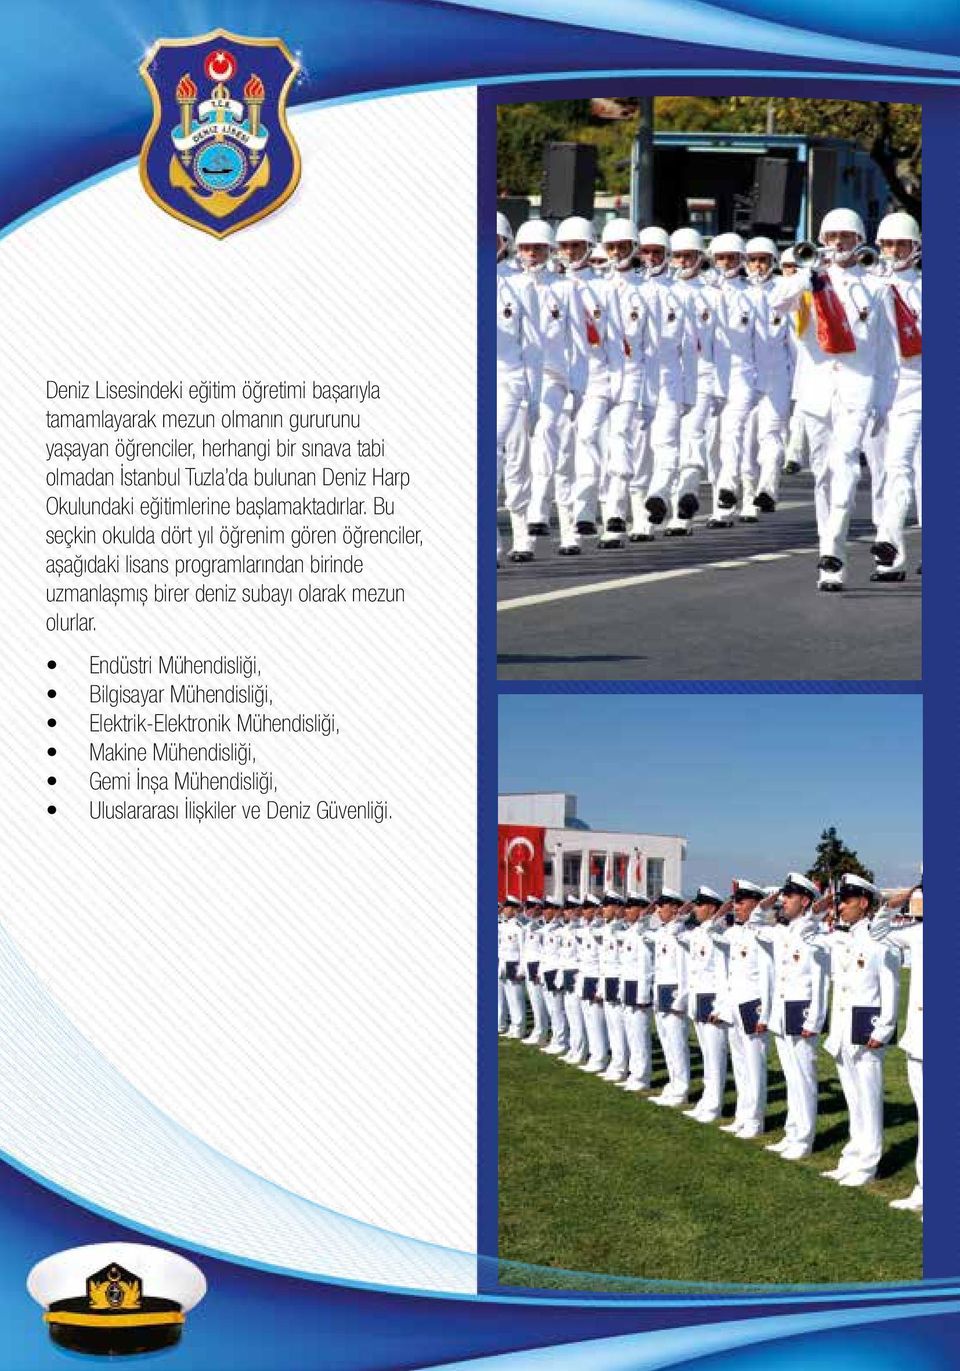 Bu seçkin okulda dört yıl öğrenim gören öğrenciler, aşağıdaki lisans programlarından birinde uzmanlaşmış birer deniz subayı olarak